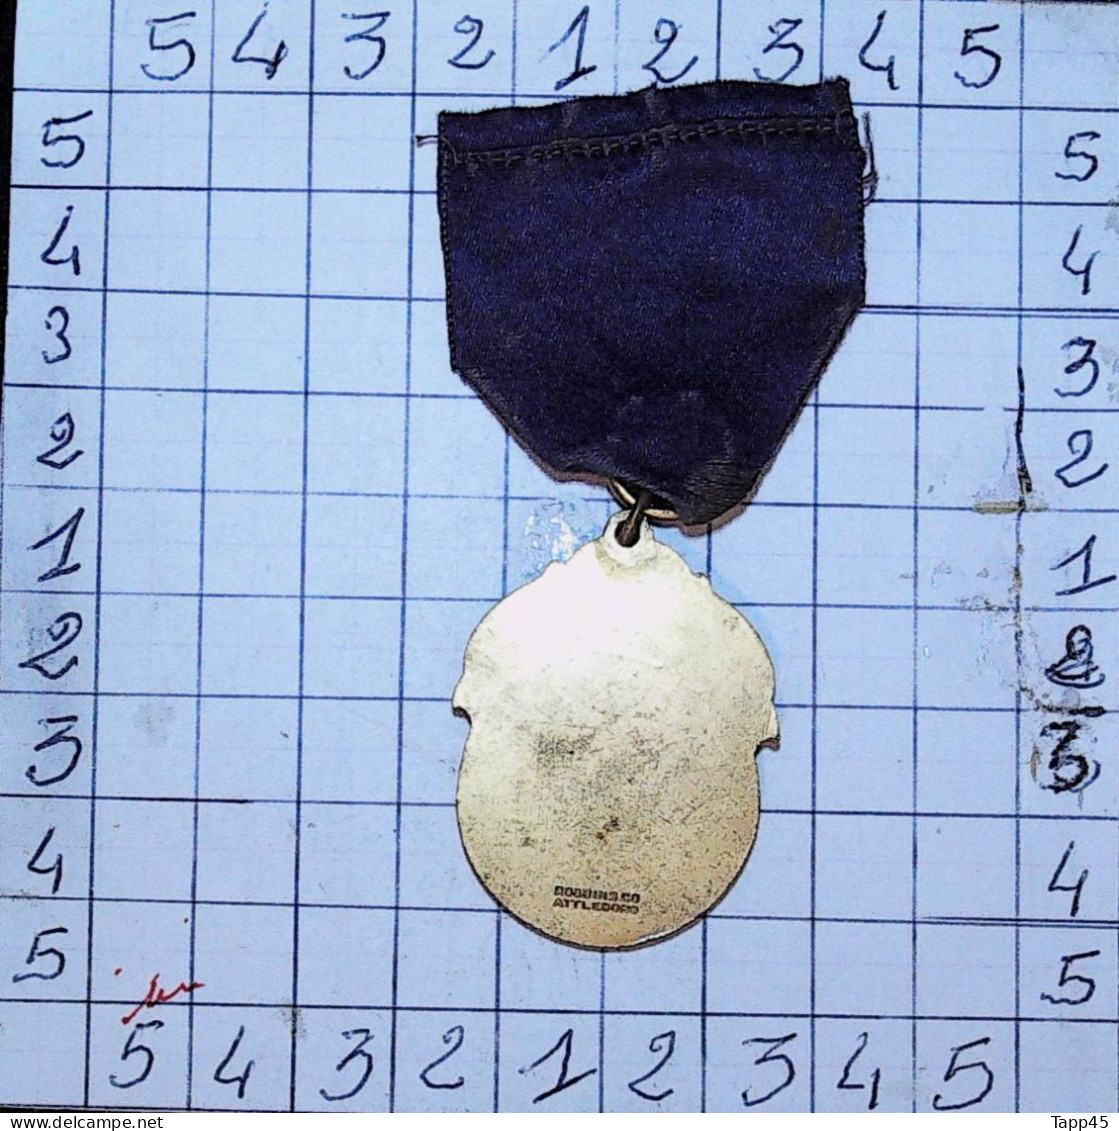 Médailles & Décorations  > médaille usa franc maçonnerie 1924 > Réf:Cl USA P 4/ 1